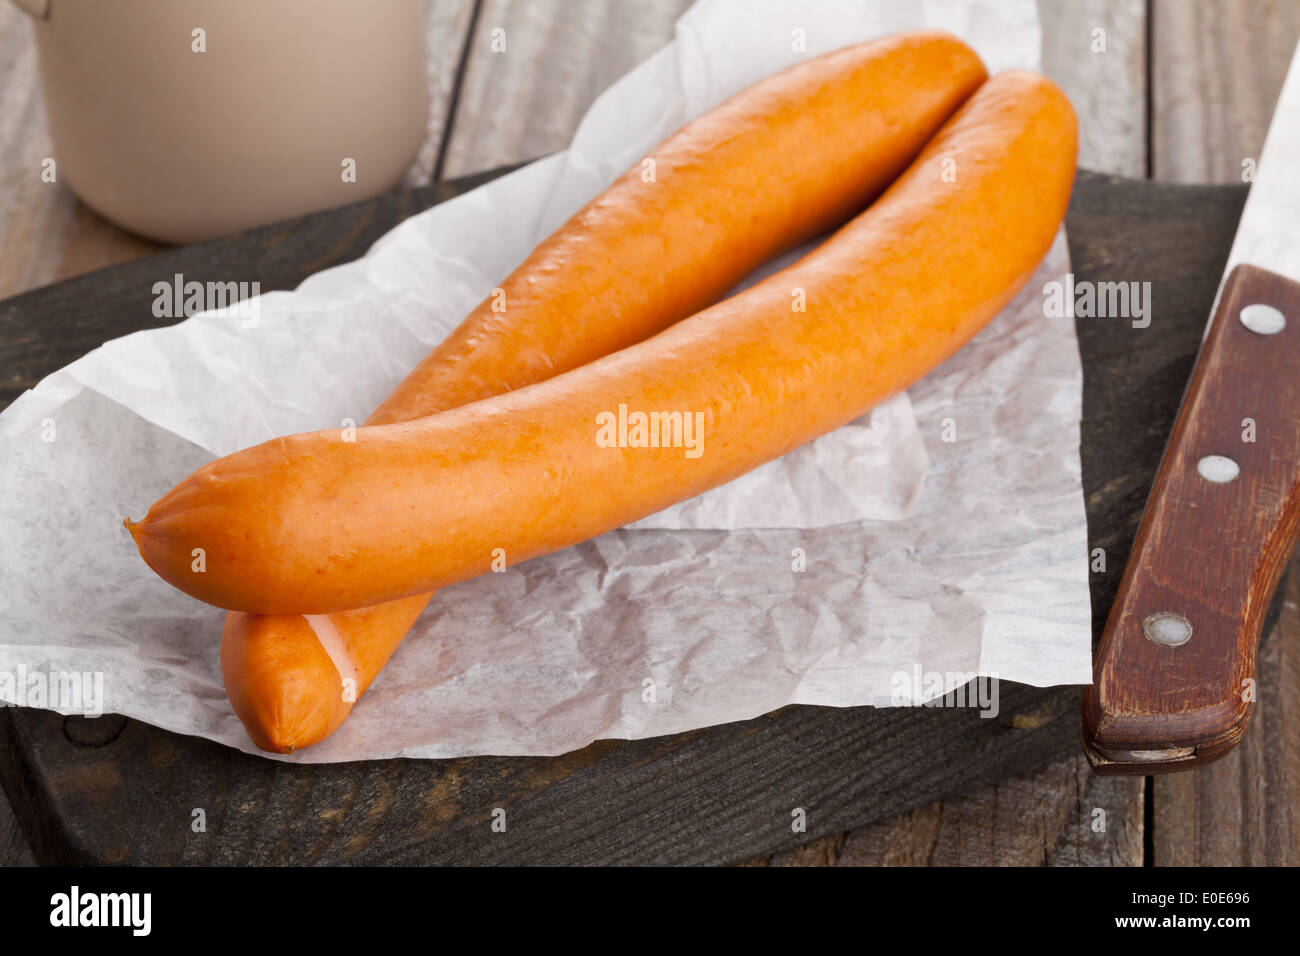 Vienna sausages ('Wiener Würstchen' or 'Frankfurter') on wooden kitchen board Stock Photo